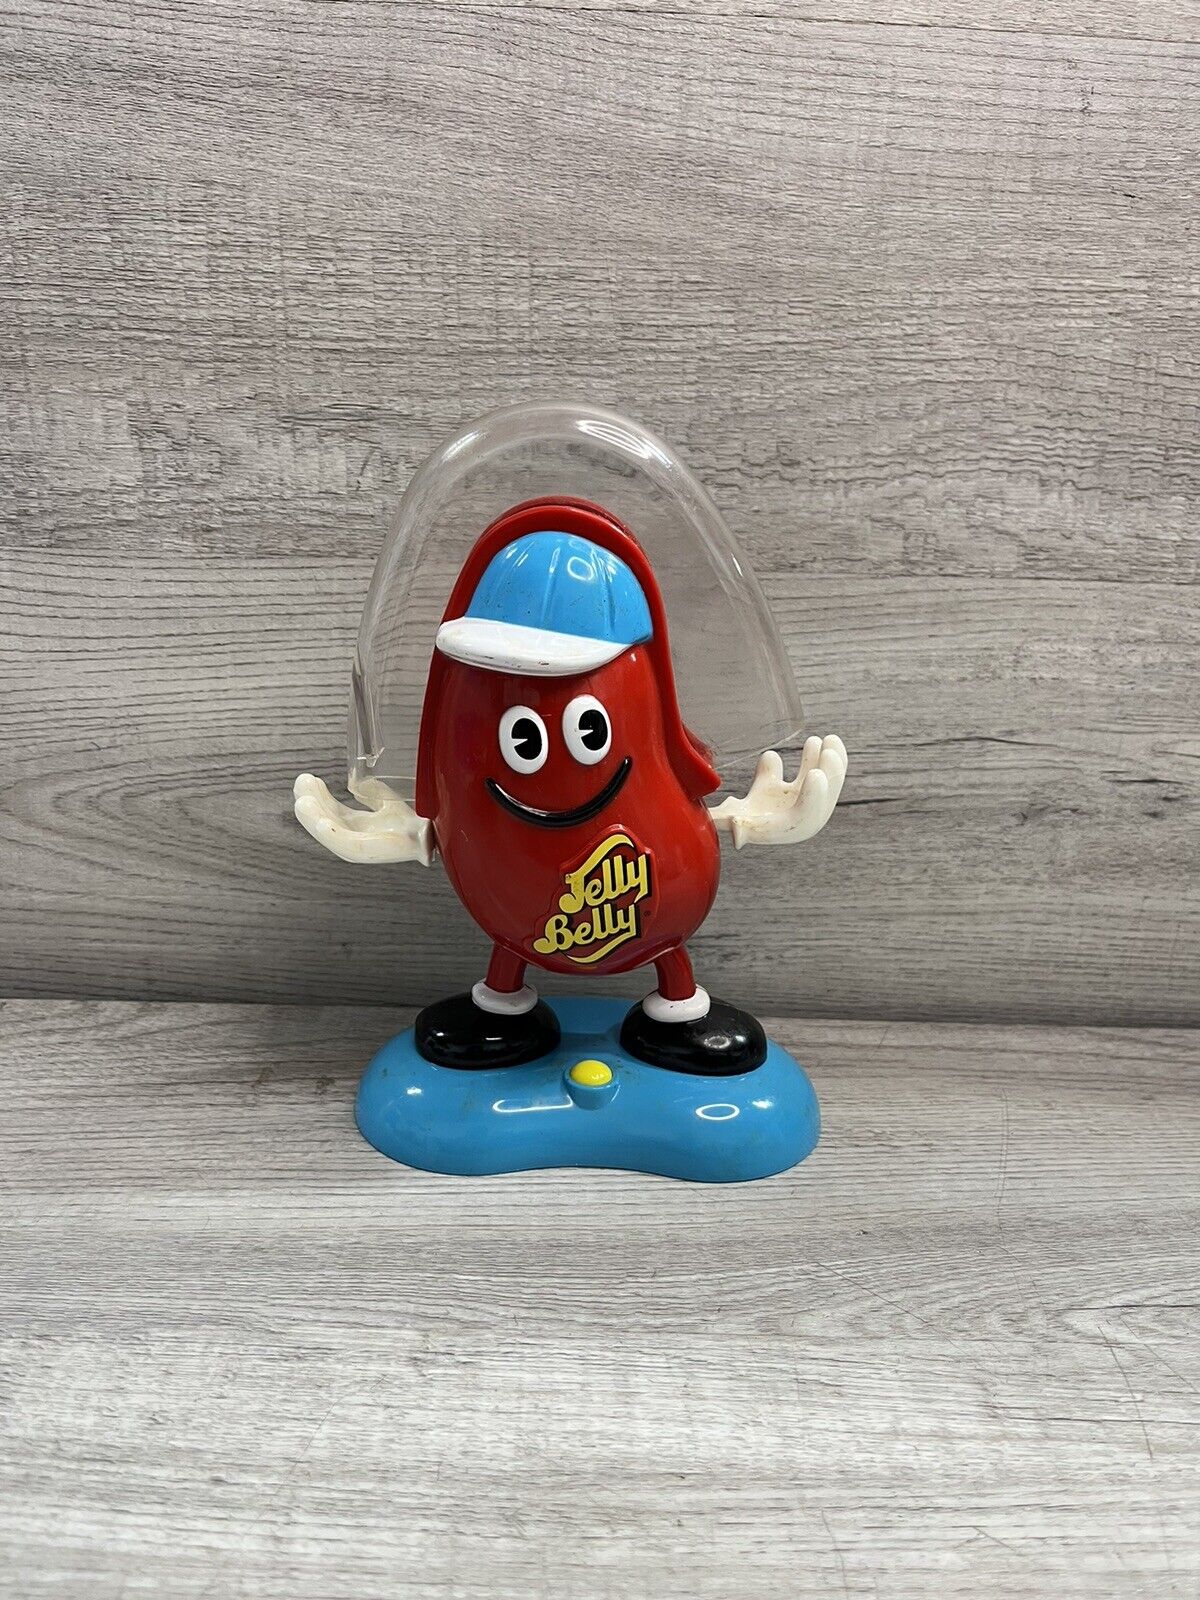 Vintage 1998 Jelly Belly Juggler Candy Dispenser